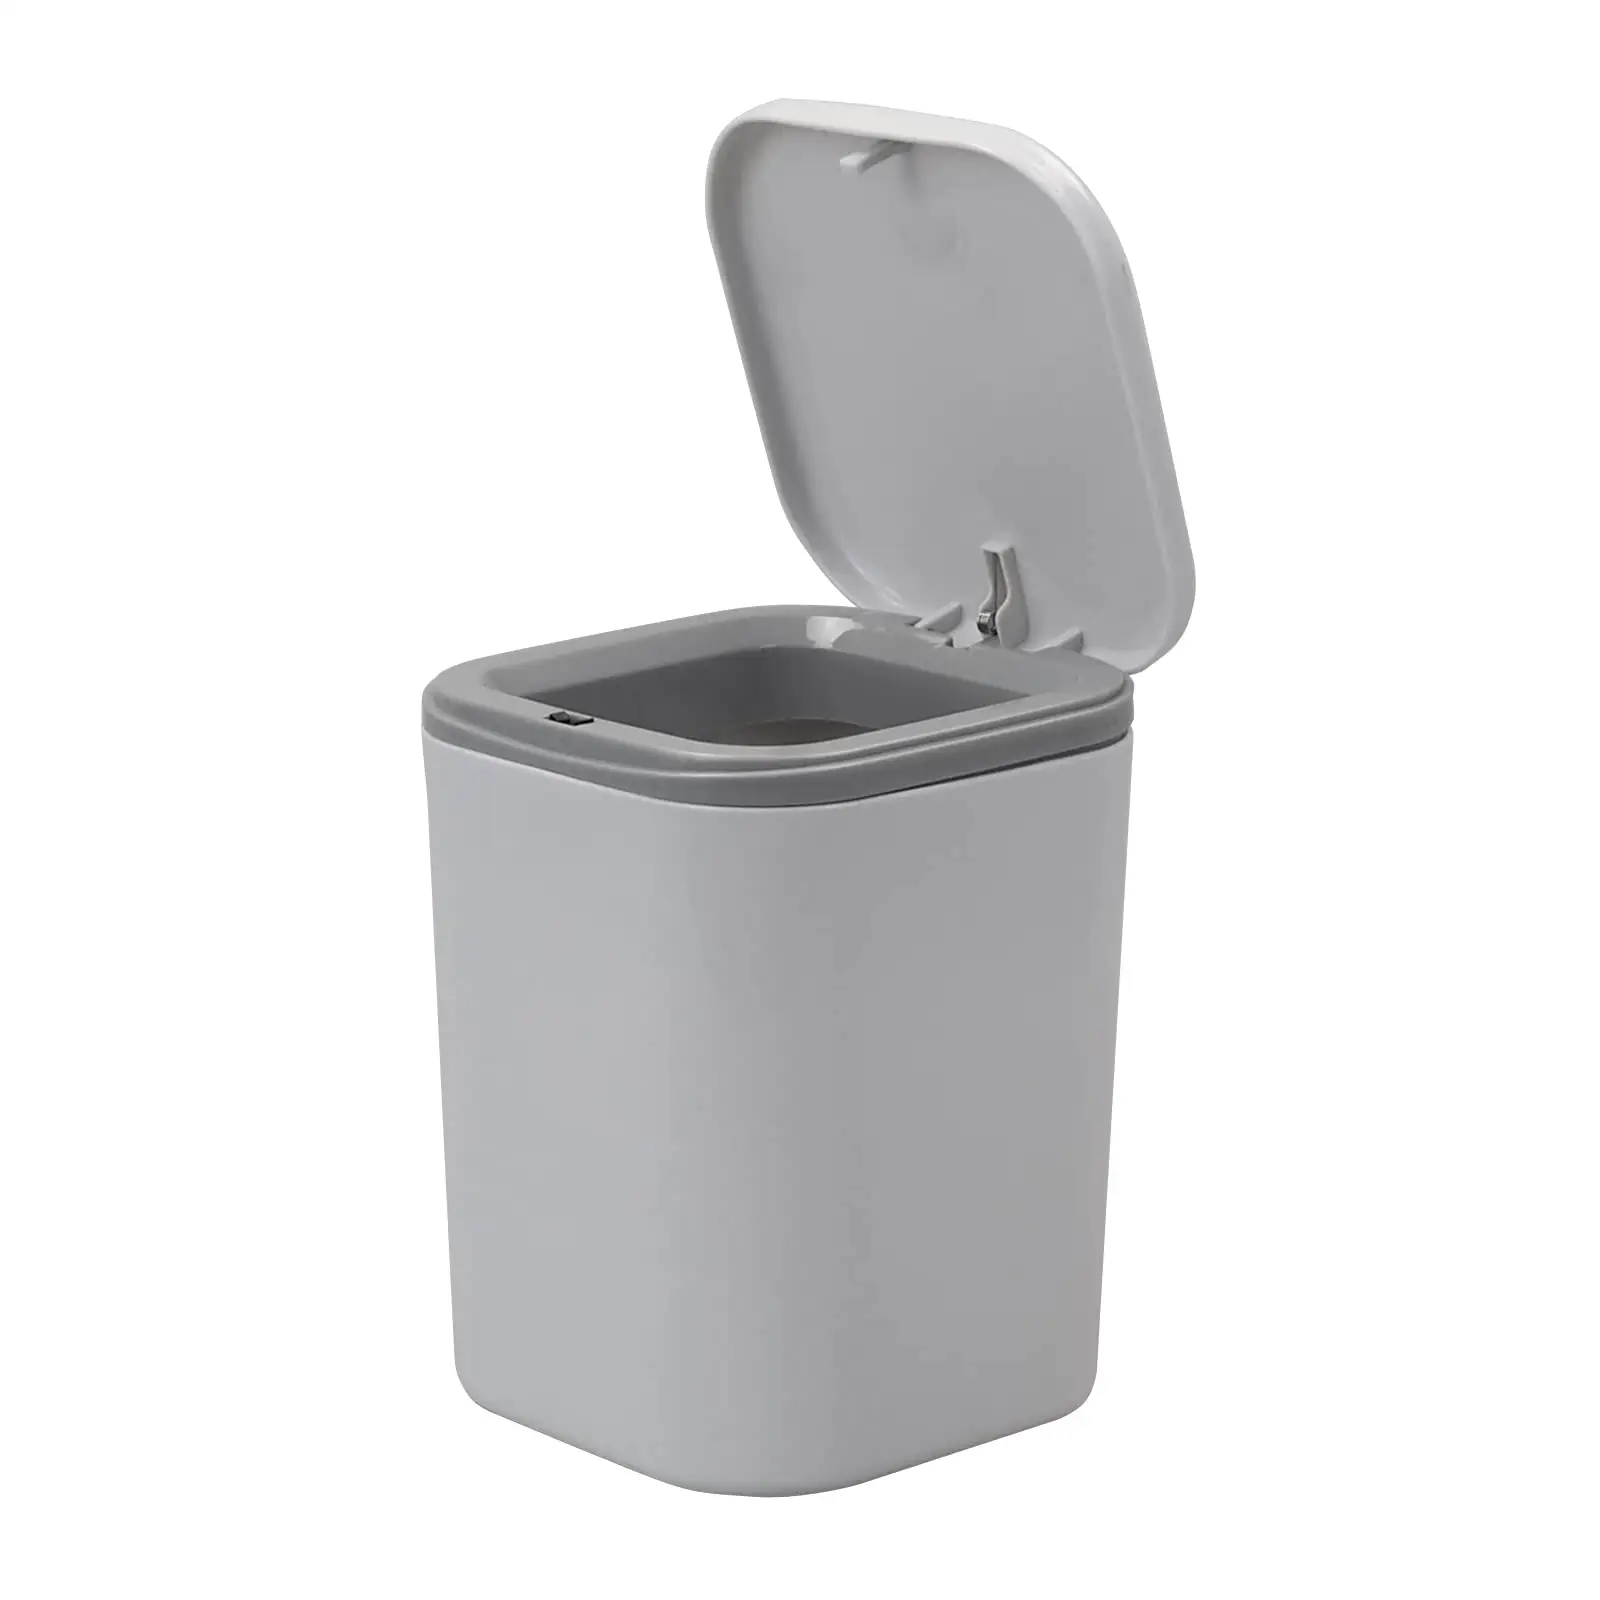 Mini poubelle pour bureau avec couvercle petite poubelle pour bureau salle de bain cuisine